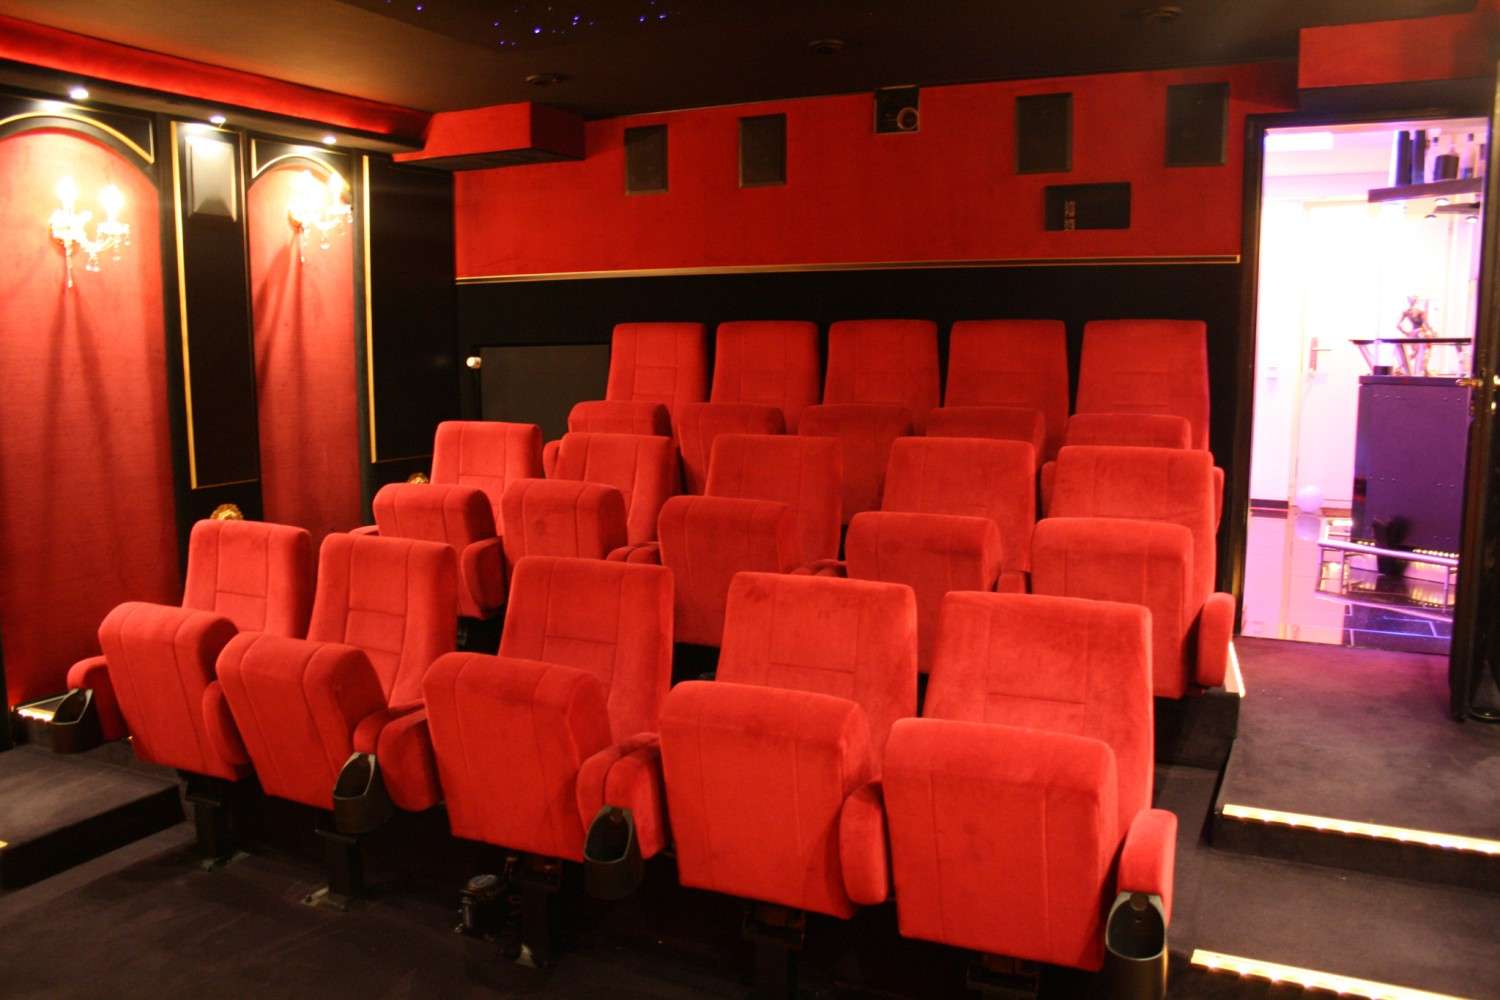 Ratgeber Cine-Lounge: Riesiges 7.1-Kino im Theaterstil - News, Bild 4